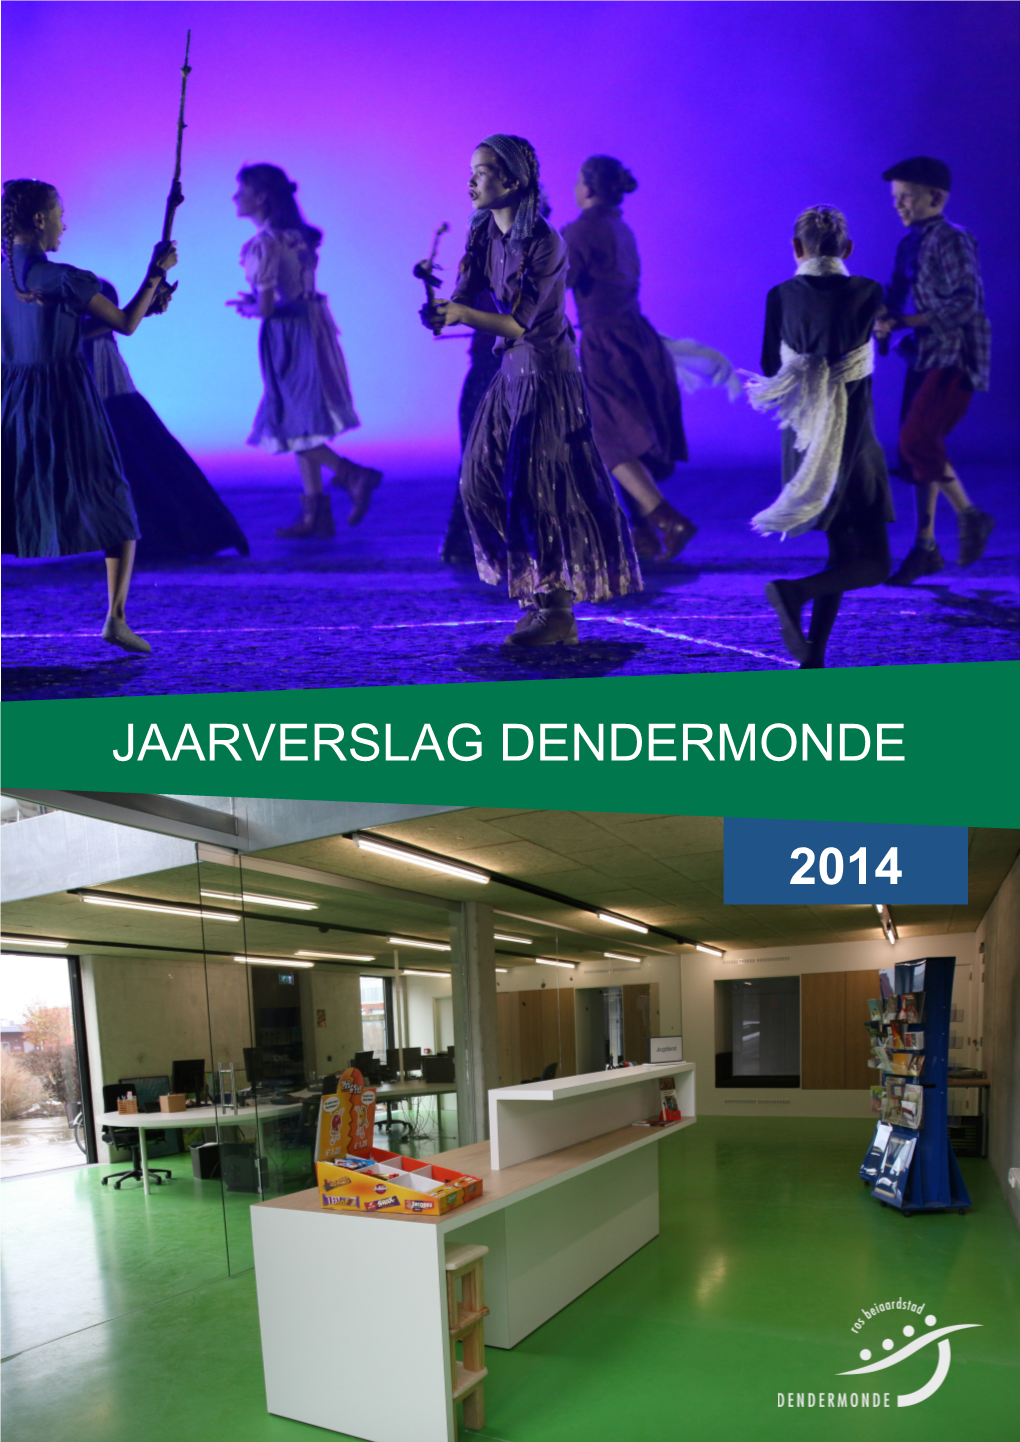 2014 Jaarverslag Dendermonde